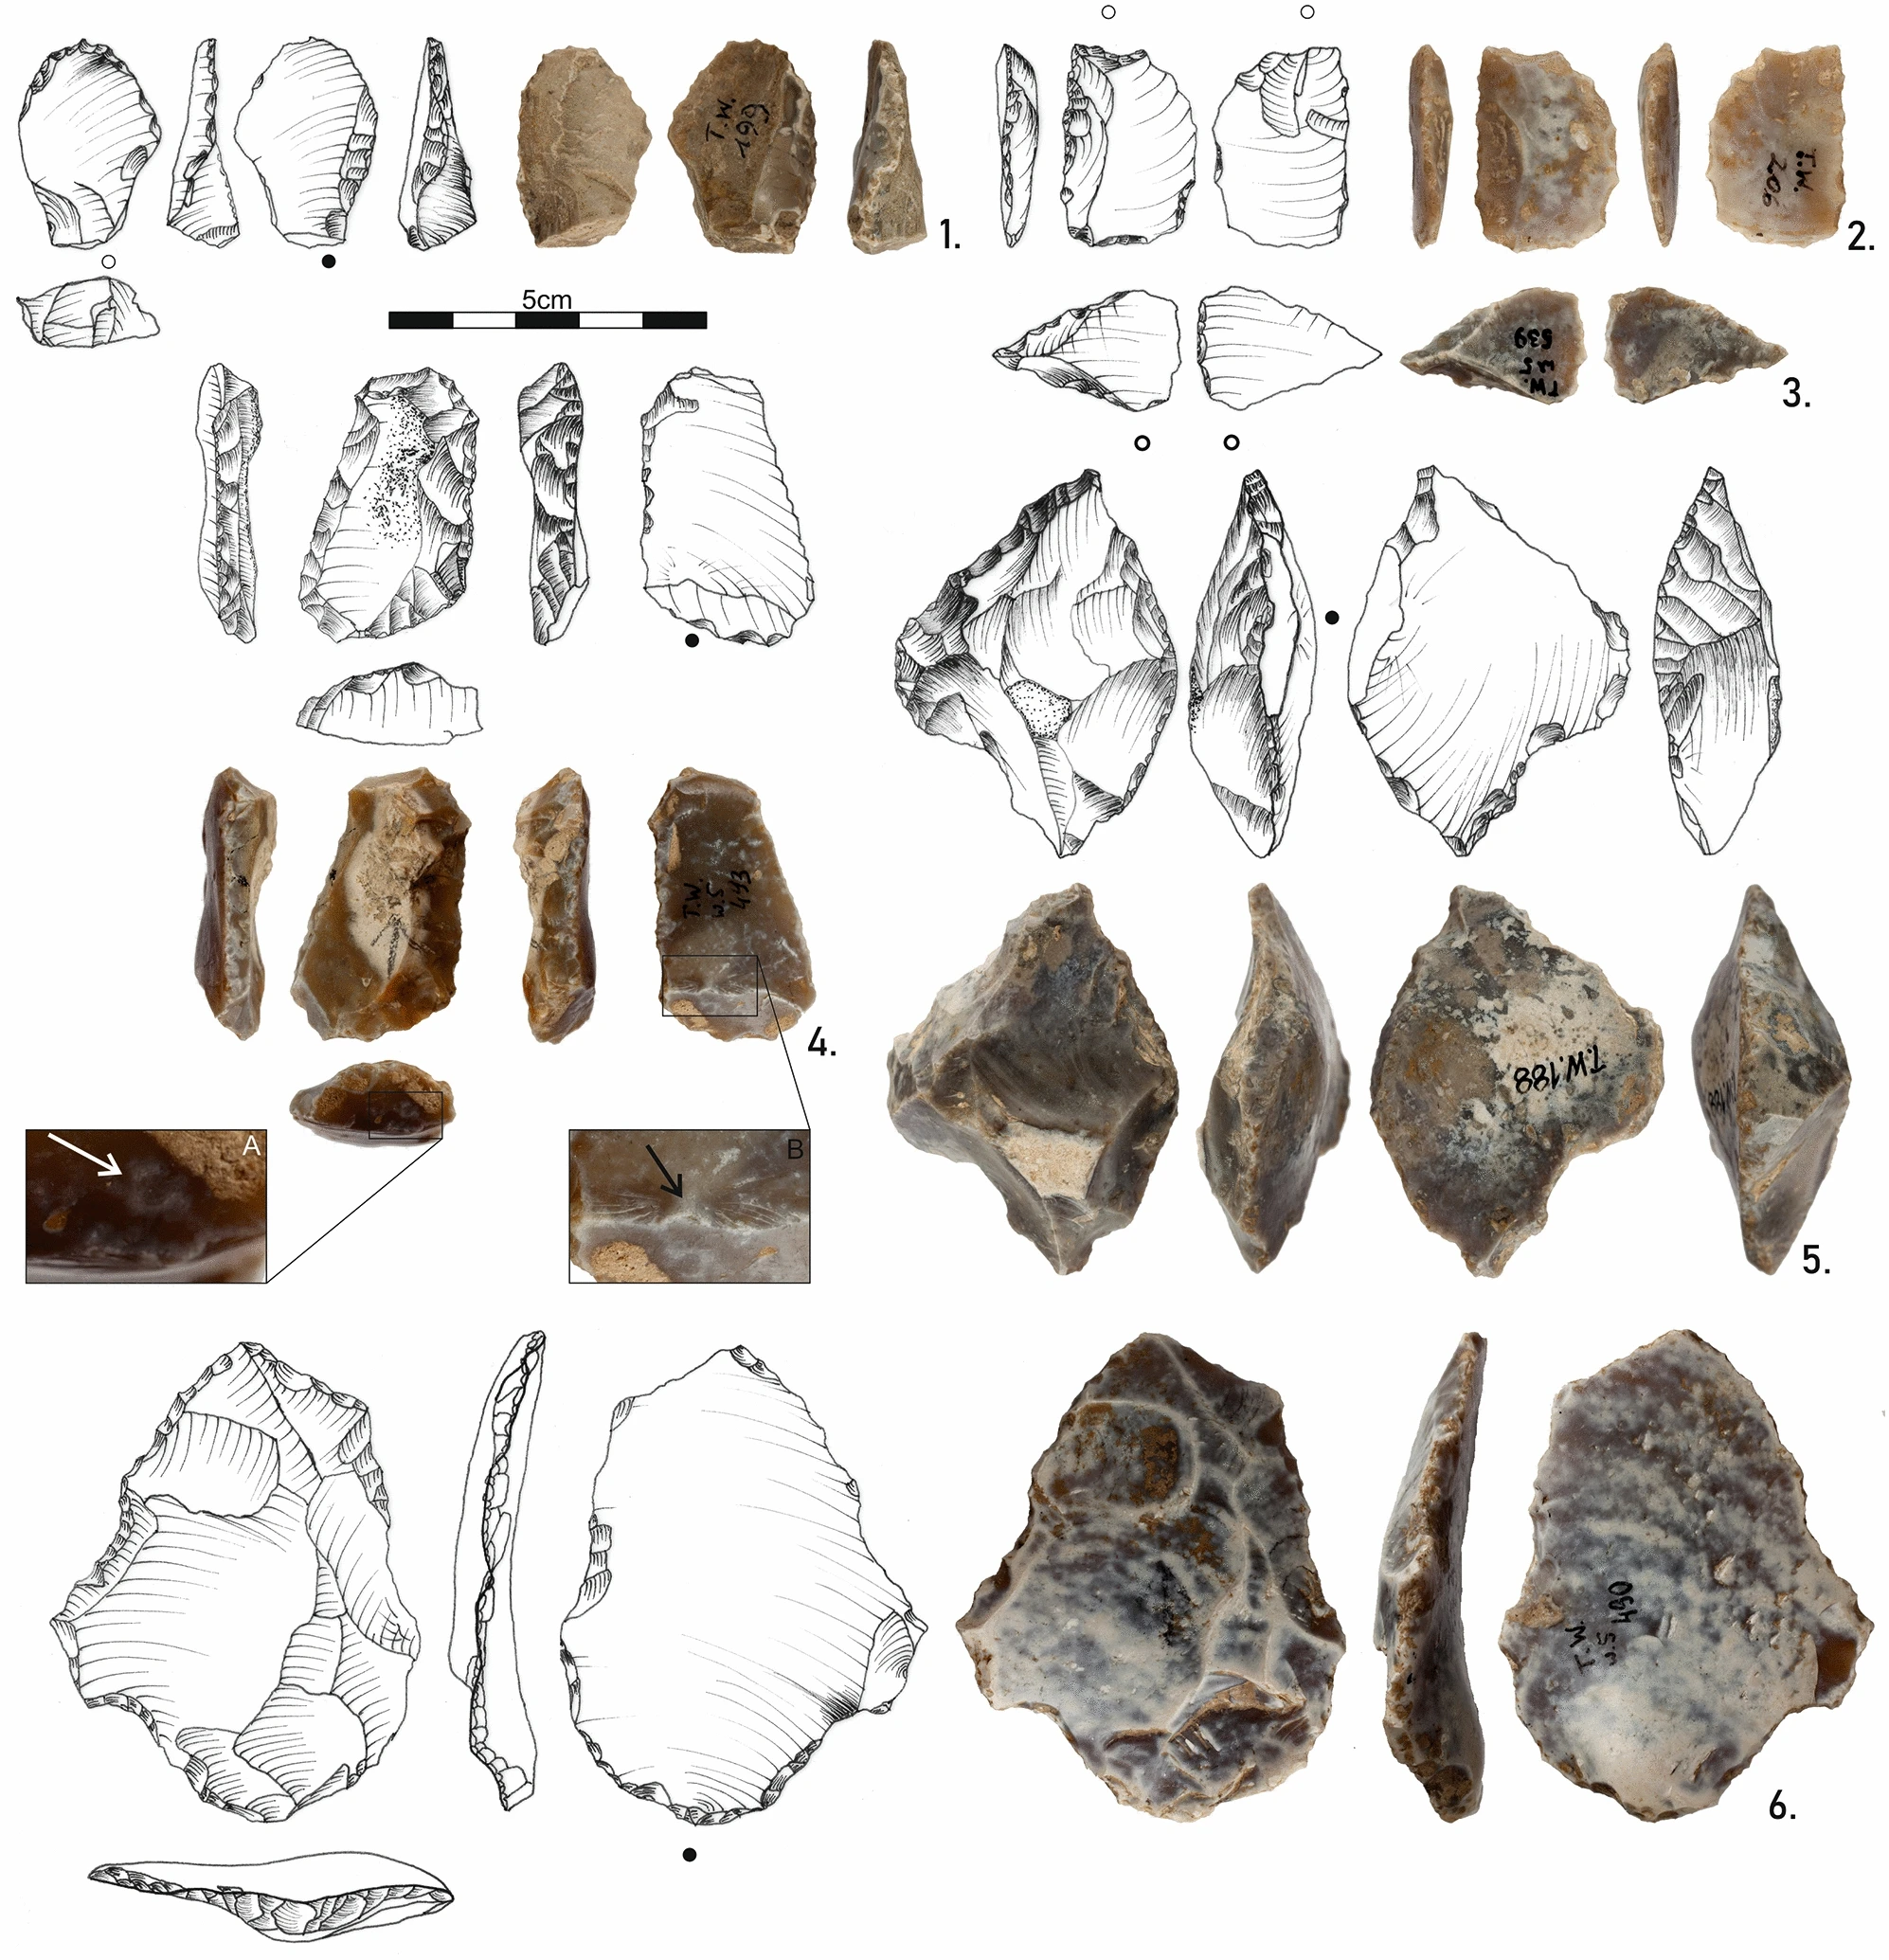 在 Cave Tunel Wielki 中發現的工具樣本。 研究人員稱這些文物已有 XNUMX 萬年曆史